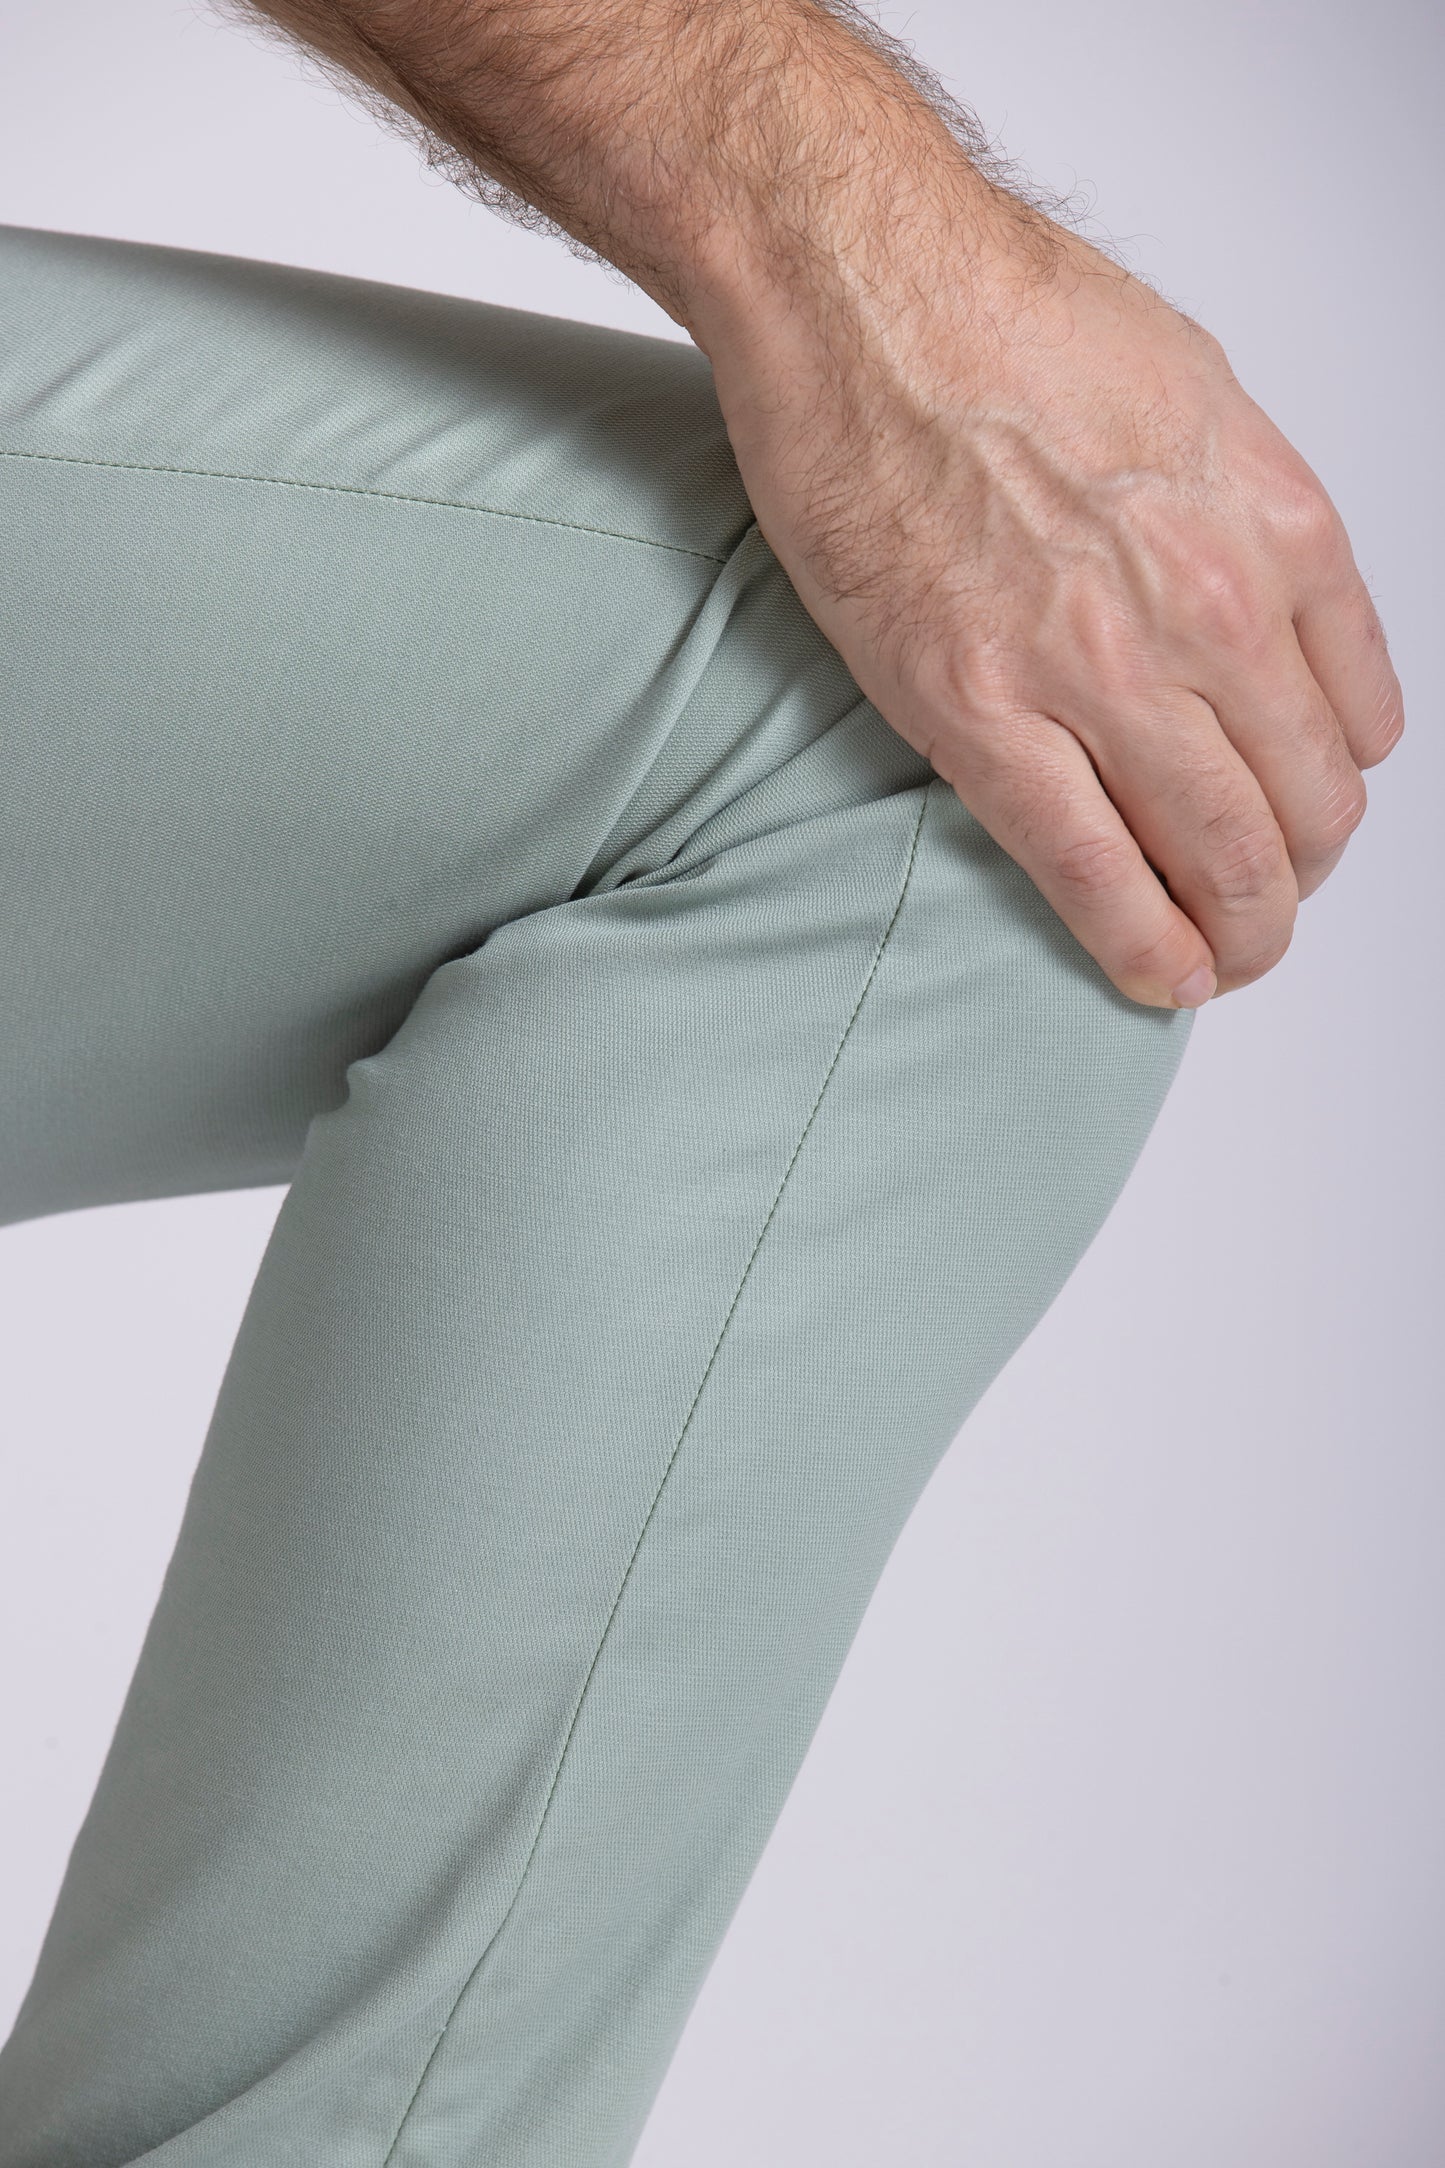 Beige cotton slim fit trousers Zilton - Sidney 17/420